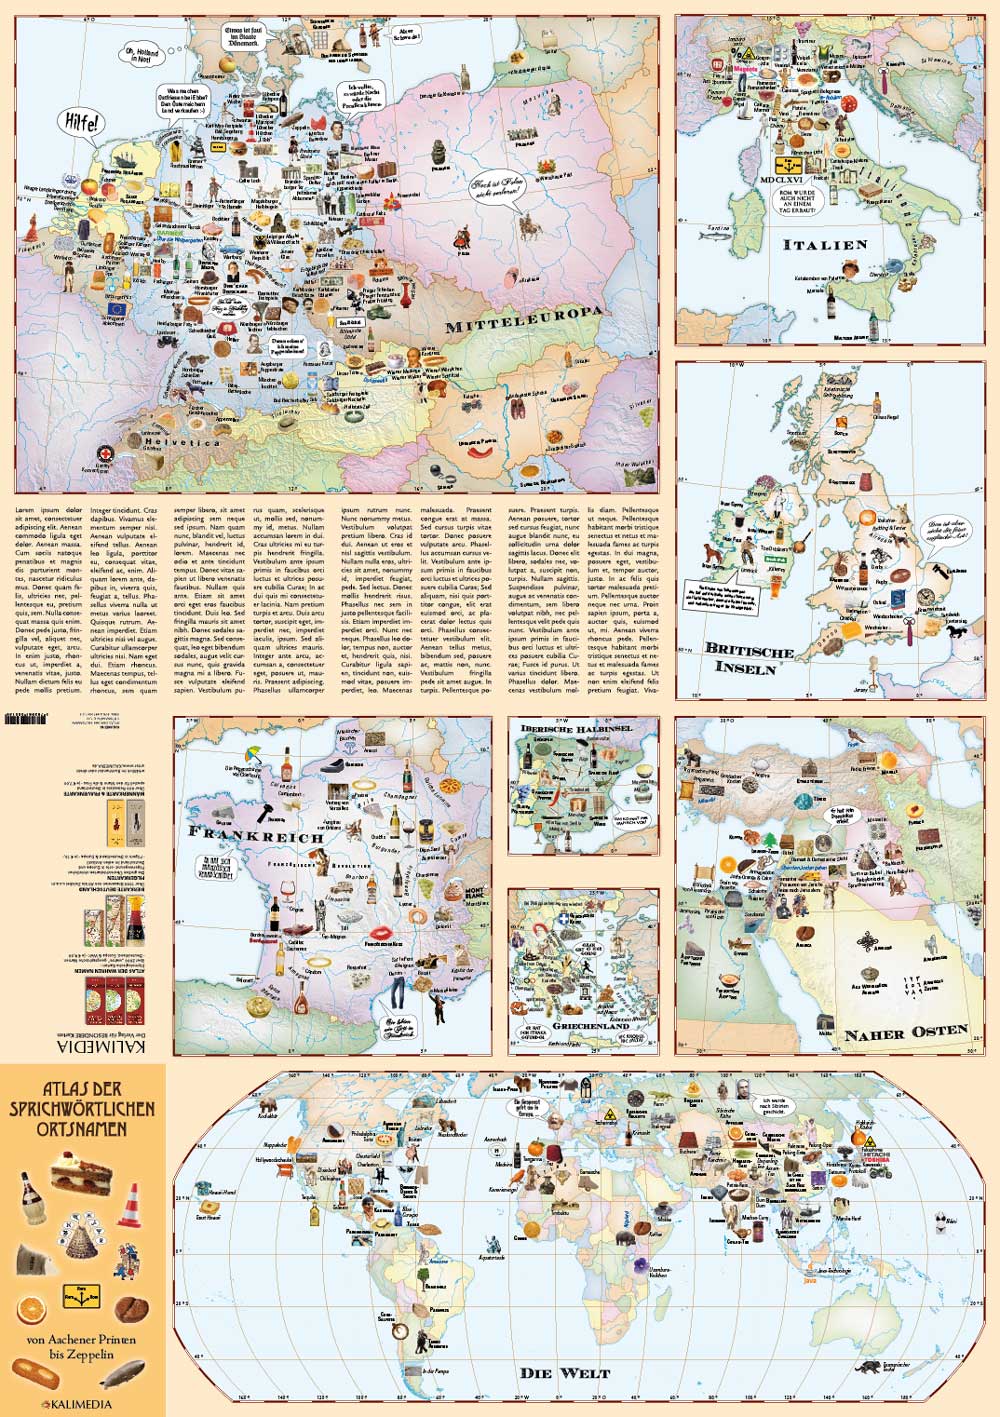 Atlas der sprichwörtlichen Ortsnamen